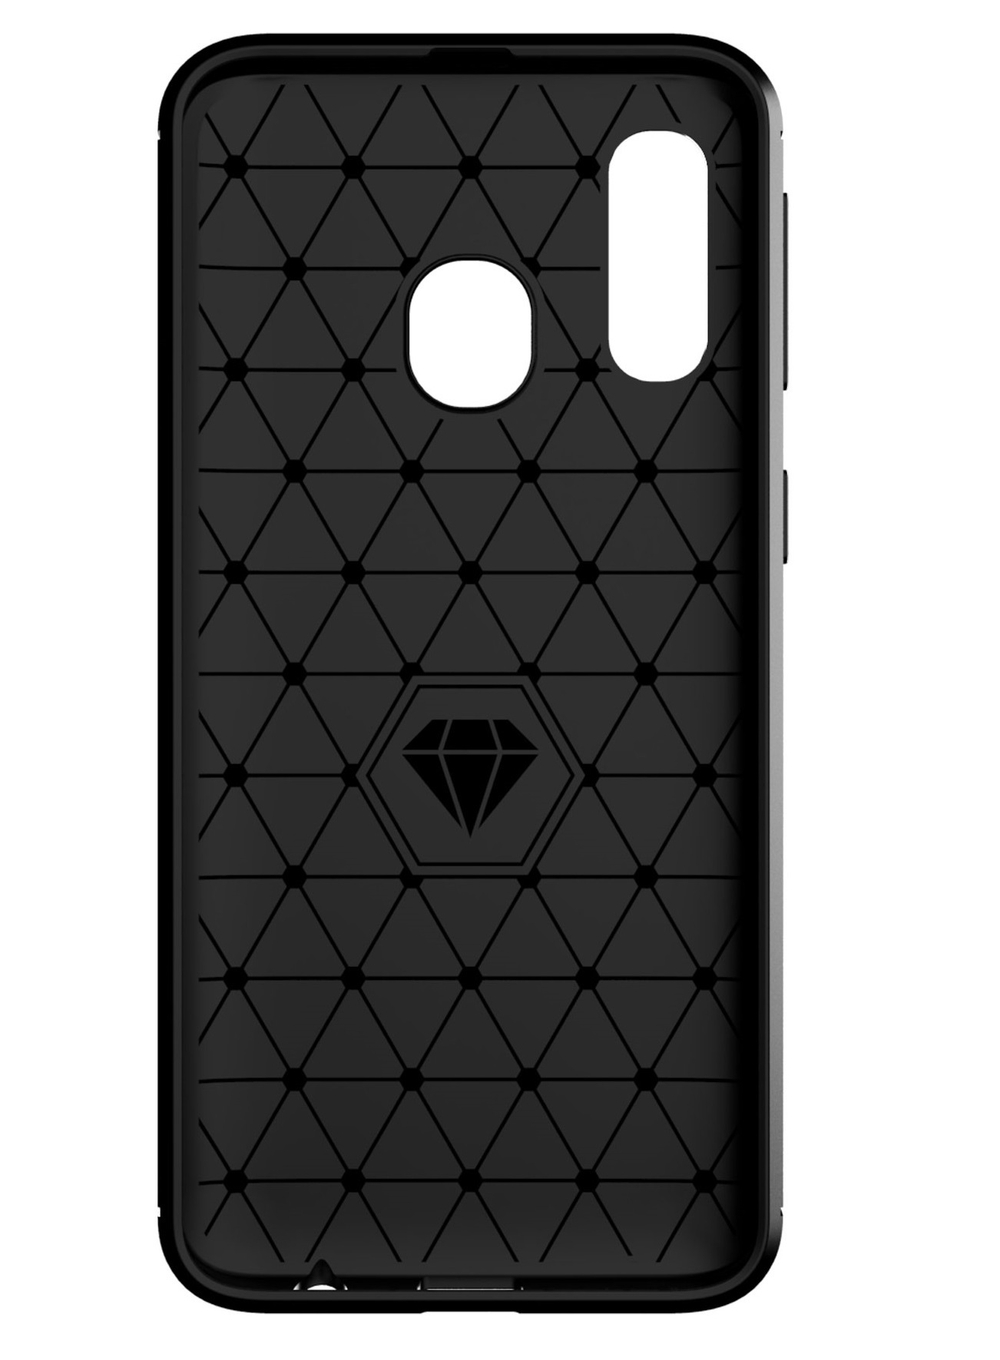 Чехол для Samsung Galaxy A40 цвет Black (черный), серия Carbon от Caseport